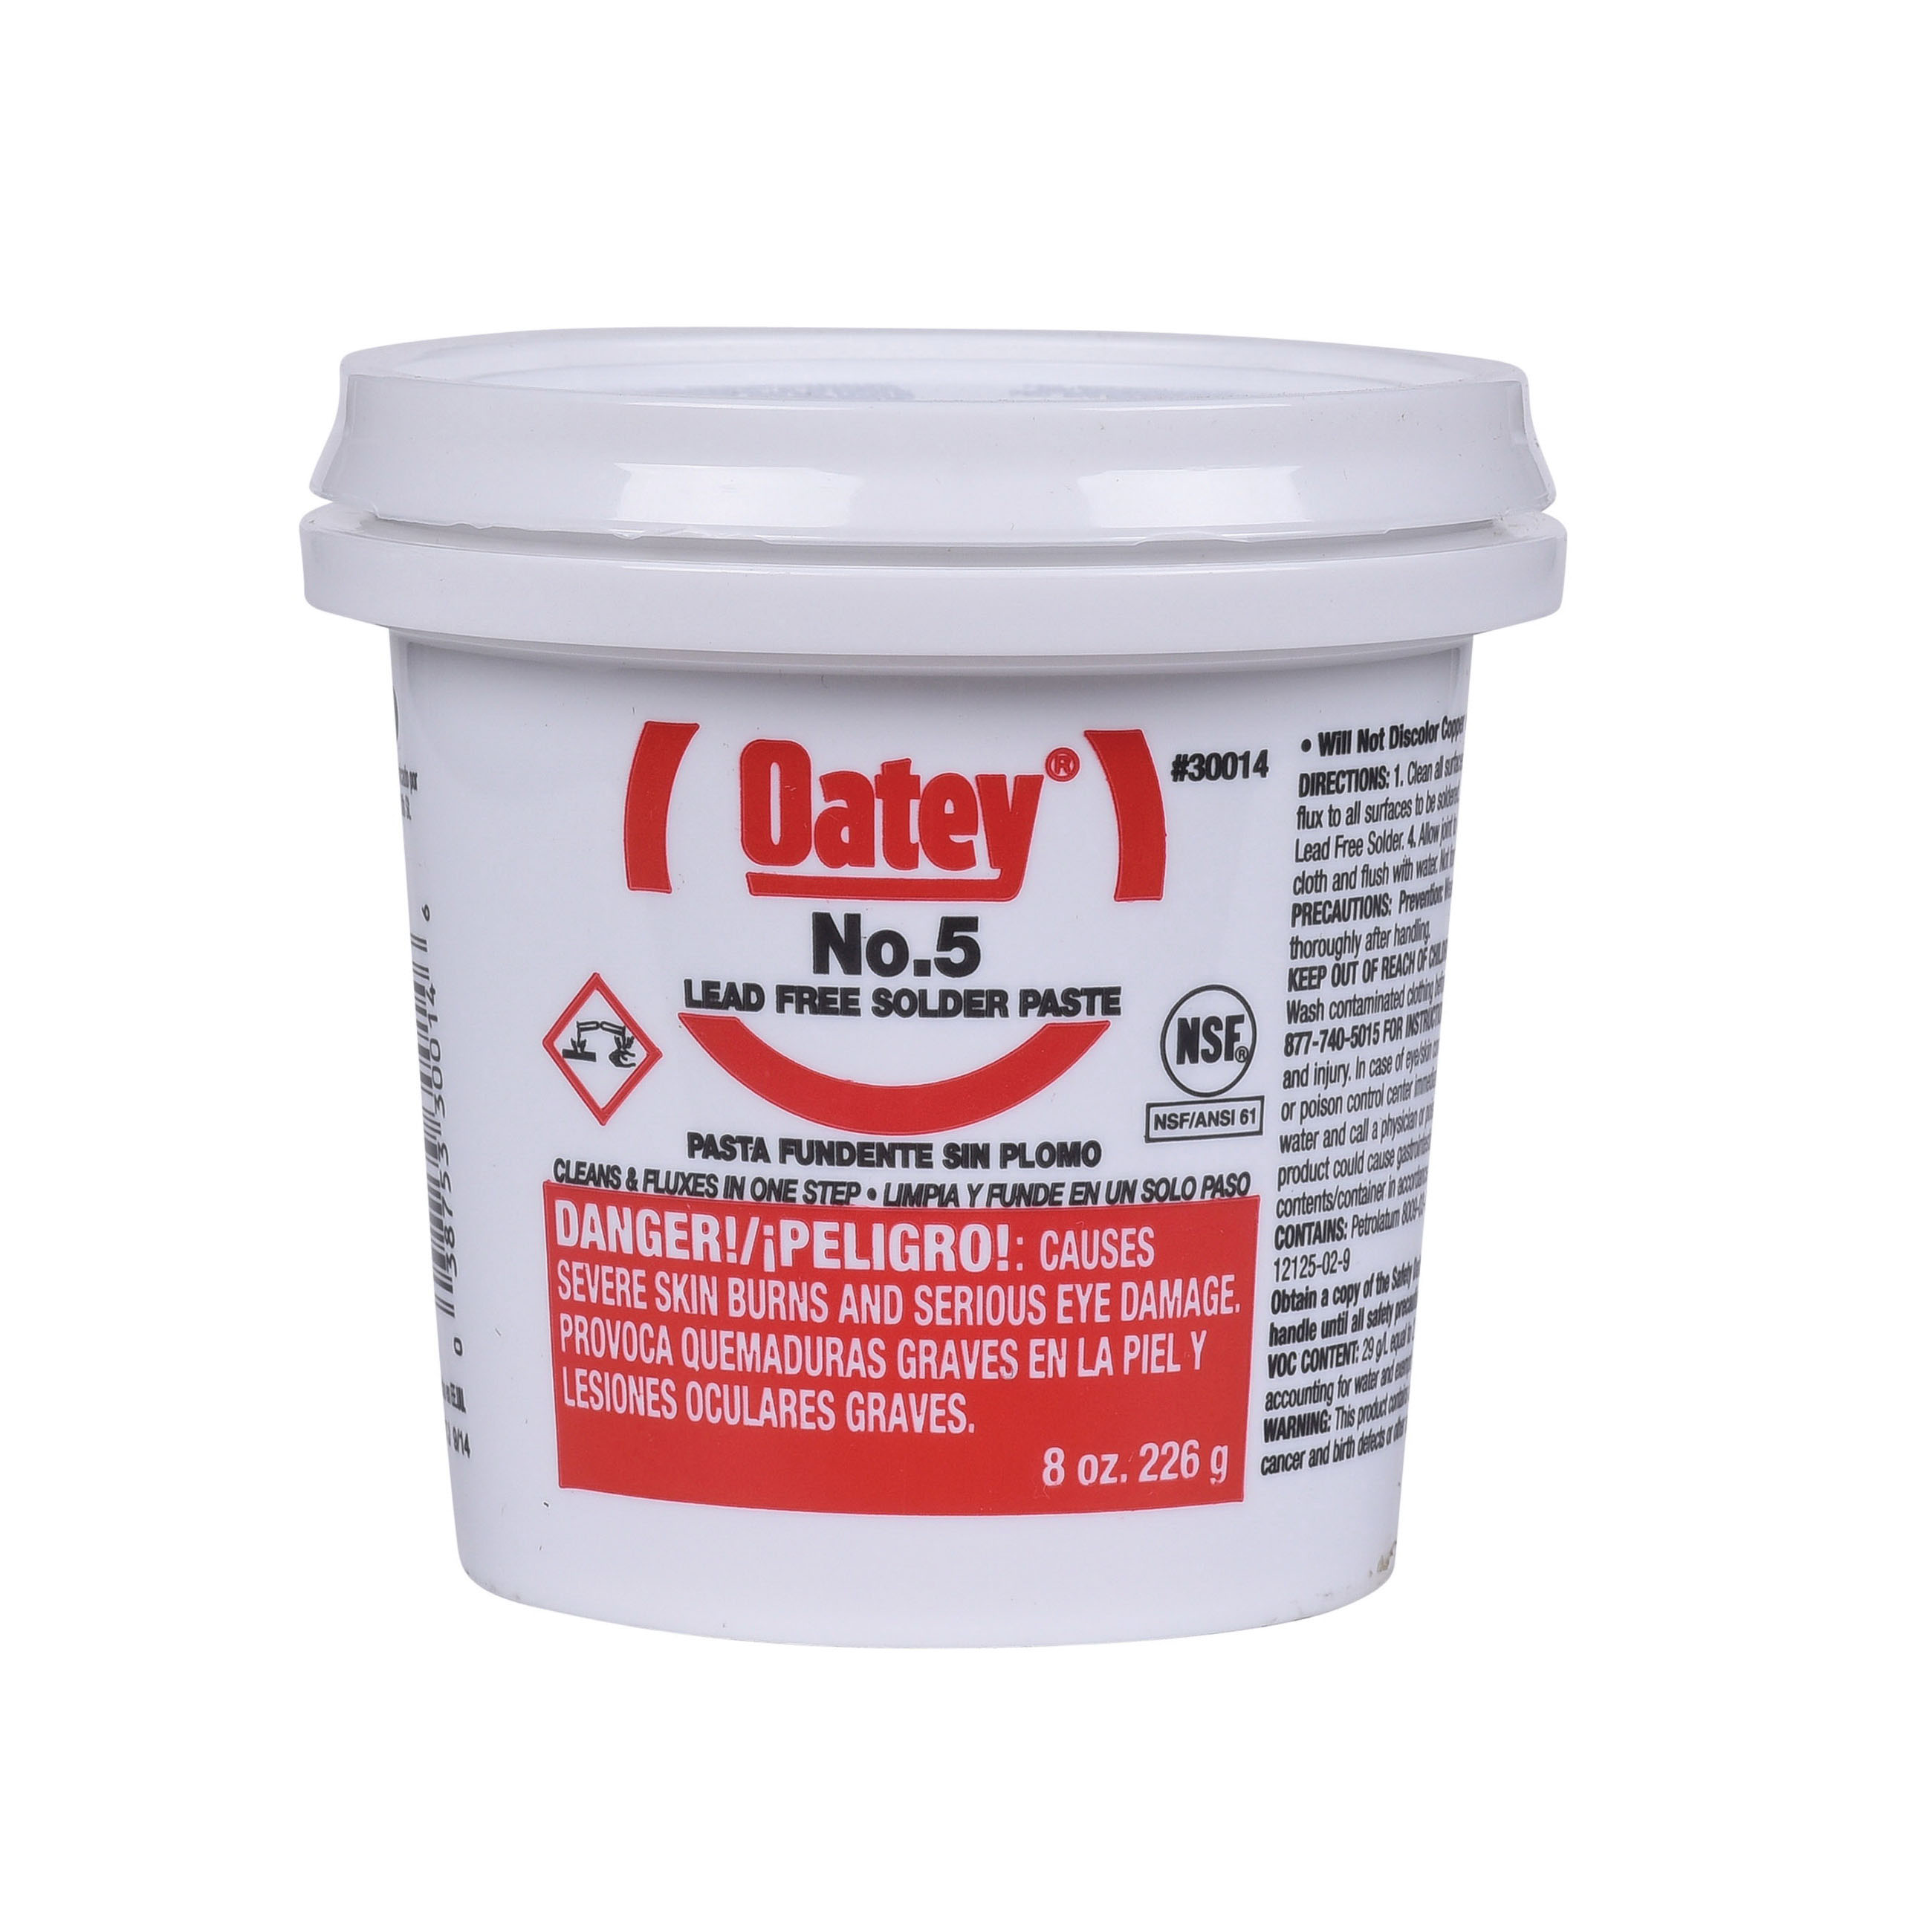 Oatey® 30014 Solder Paste Flux, Amber, 8 oz Bucket, 400 - 700 deg F